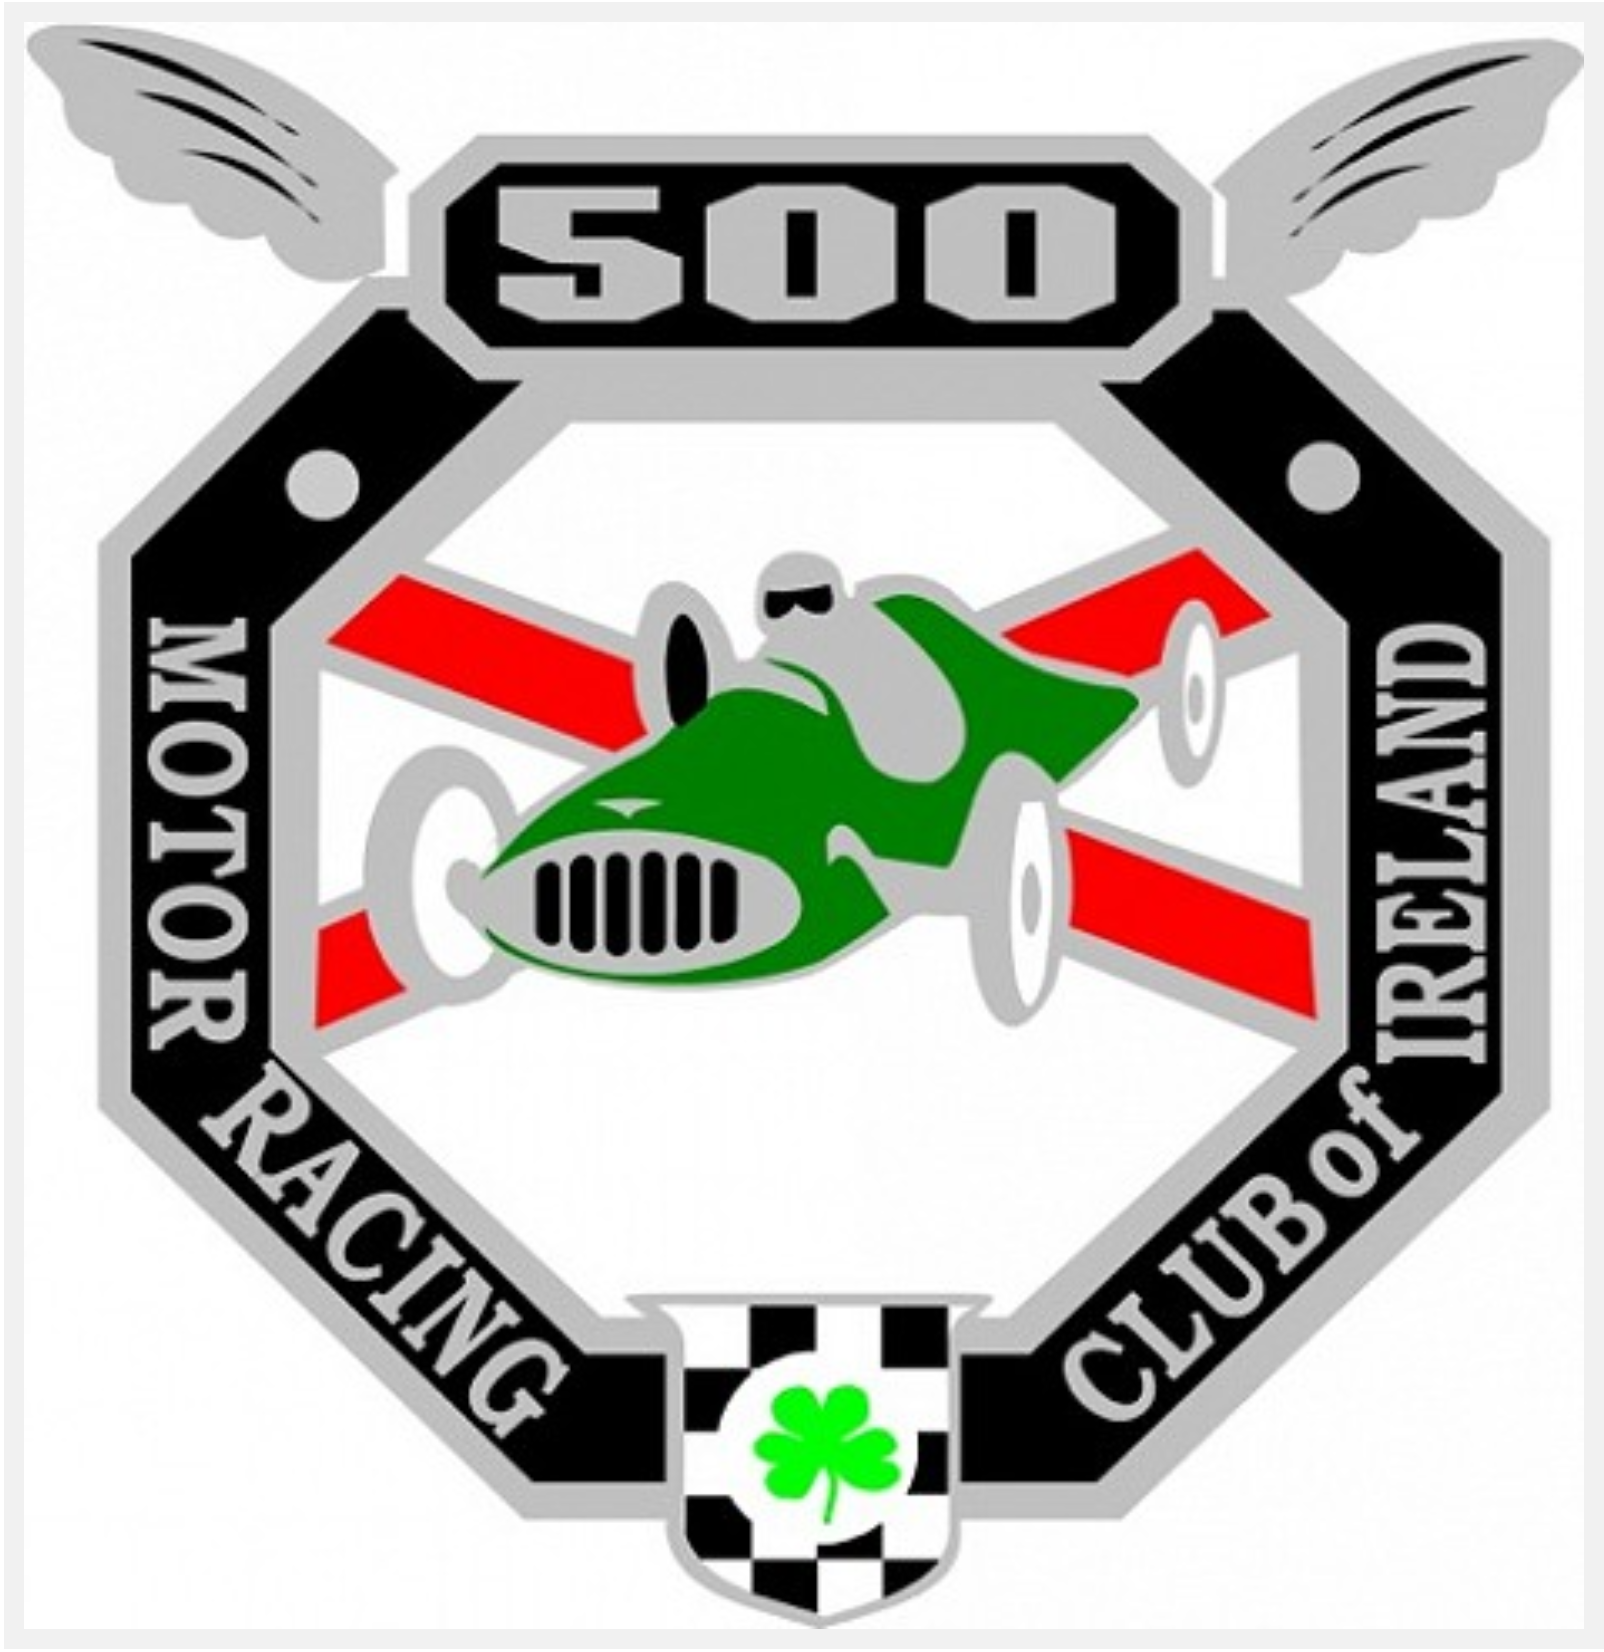 500 Club Logo